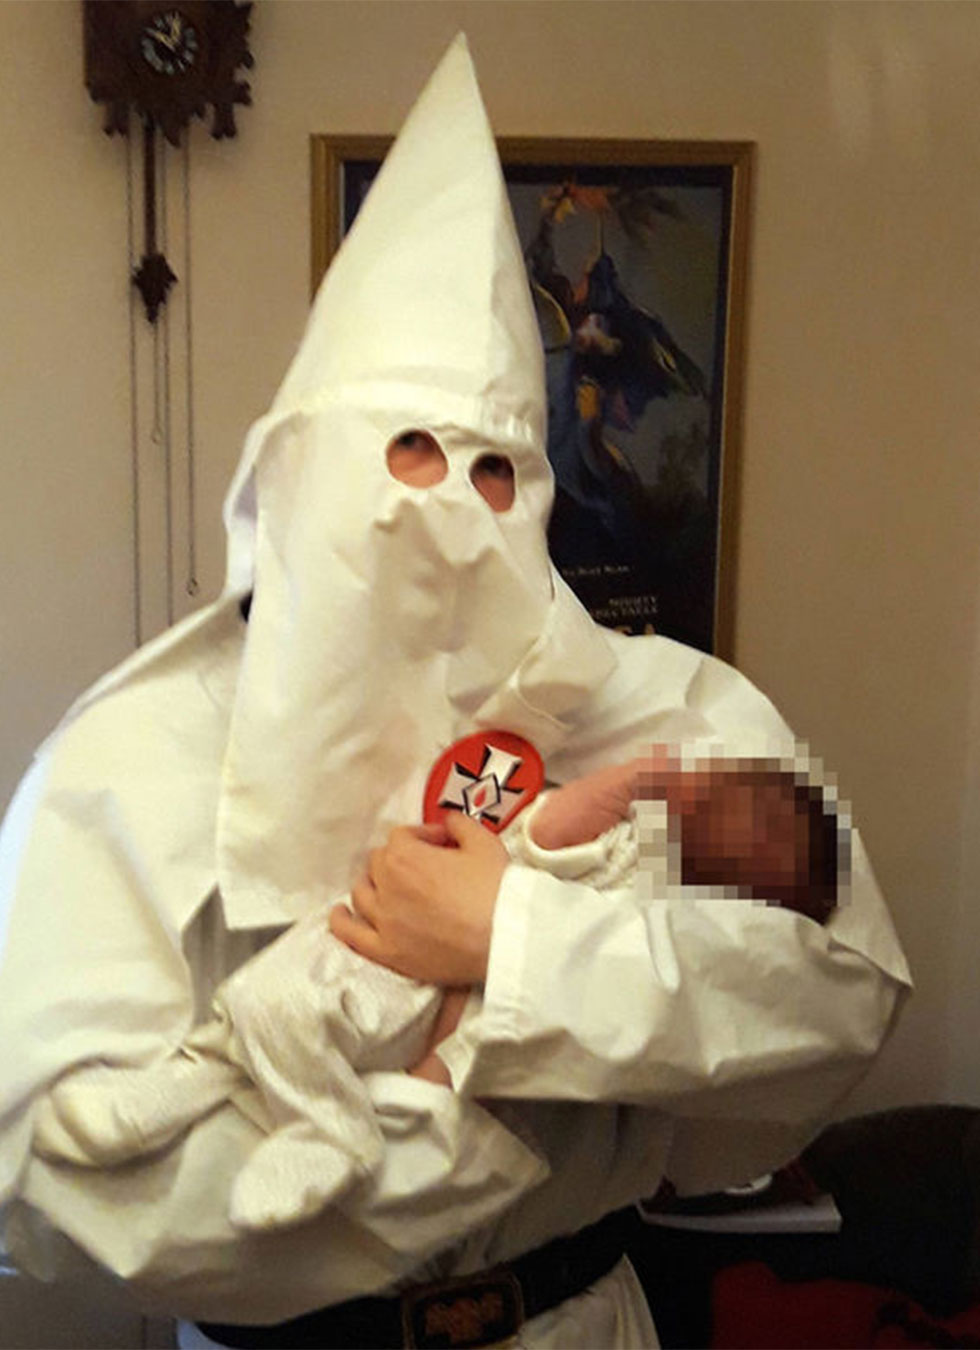 Parents dressed as Ku Klux Klan